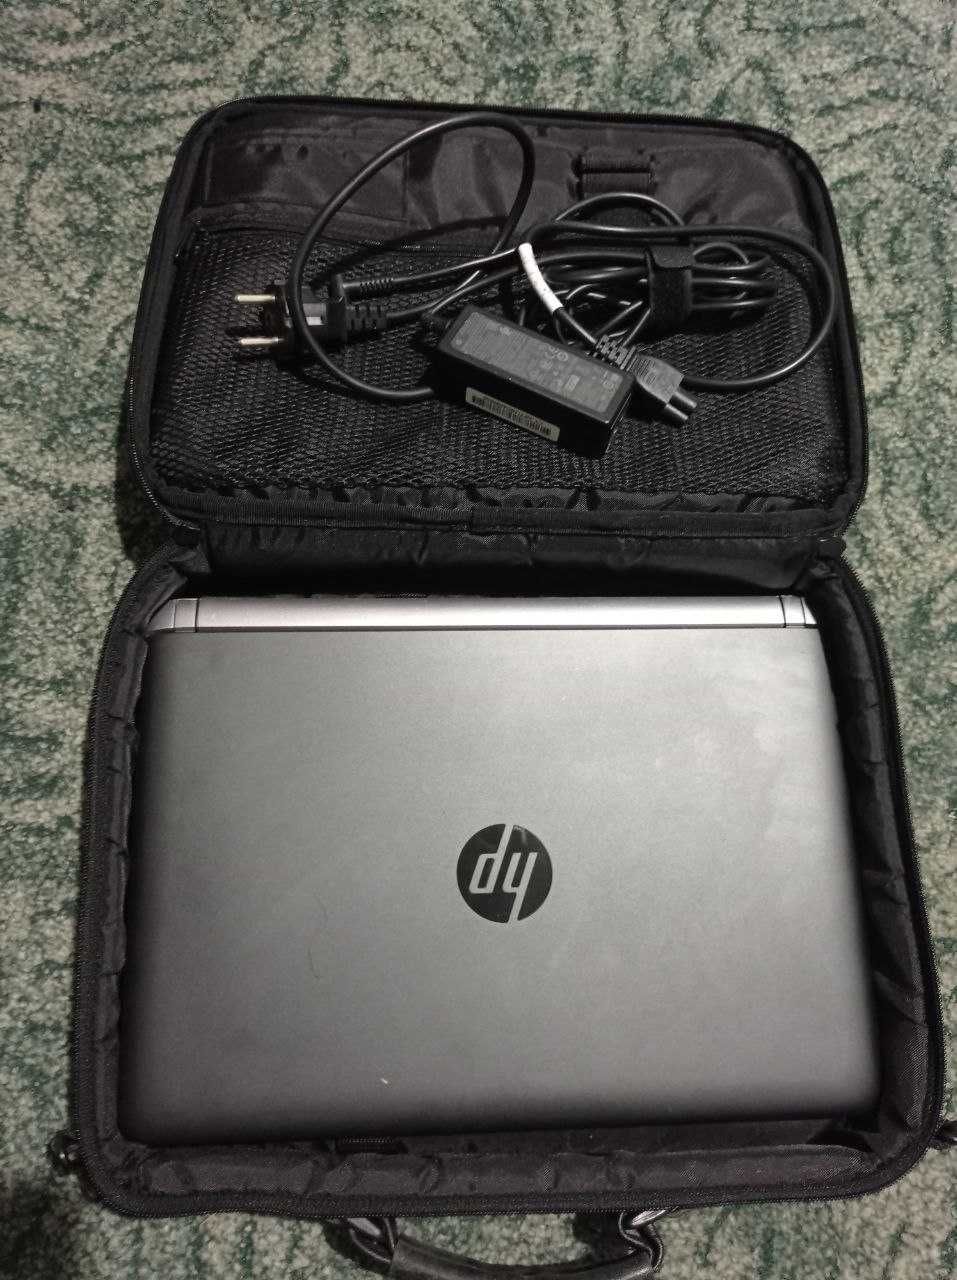 Уживаний ноутбук HP ProBook 430 G3 + сумка в подарунок.